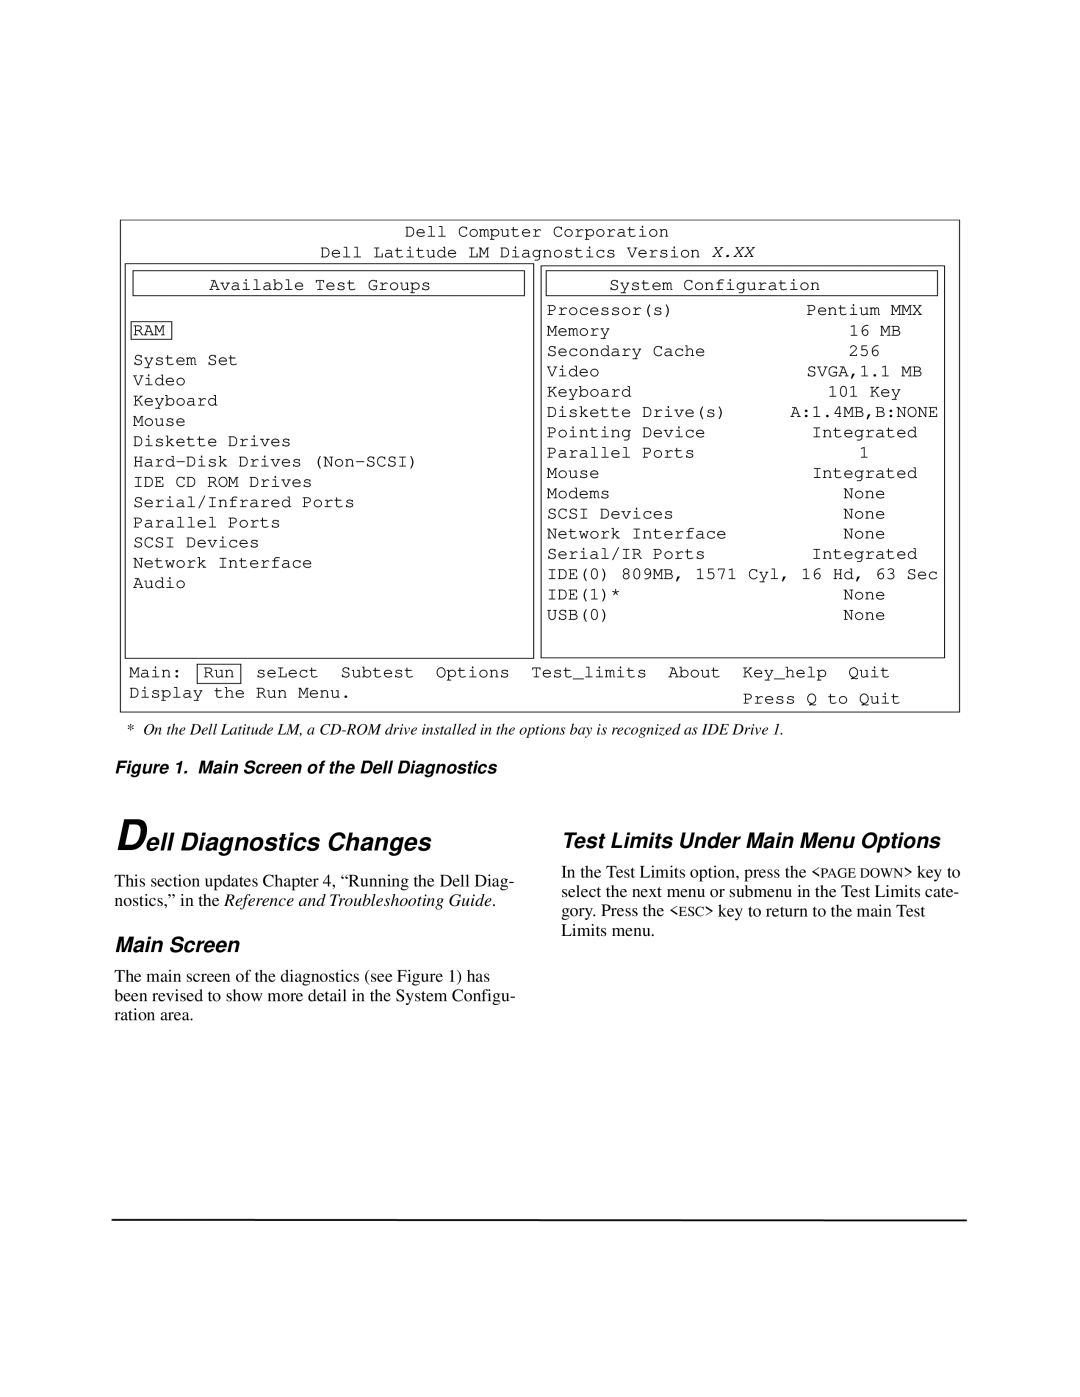 Dell LM Dell Diagnostics Changes, Test Limits Under Main Menu Options, Main Screen of the Dell Diagnostics 